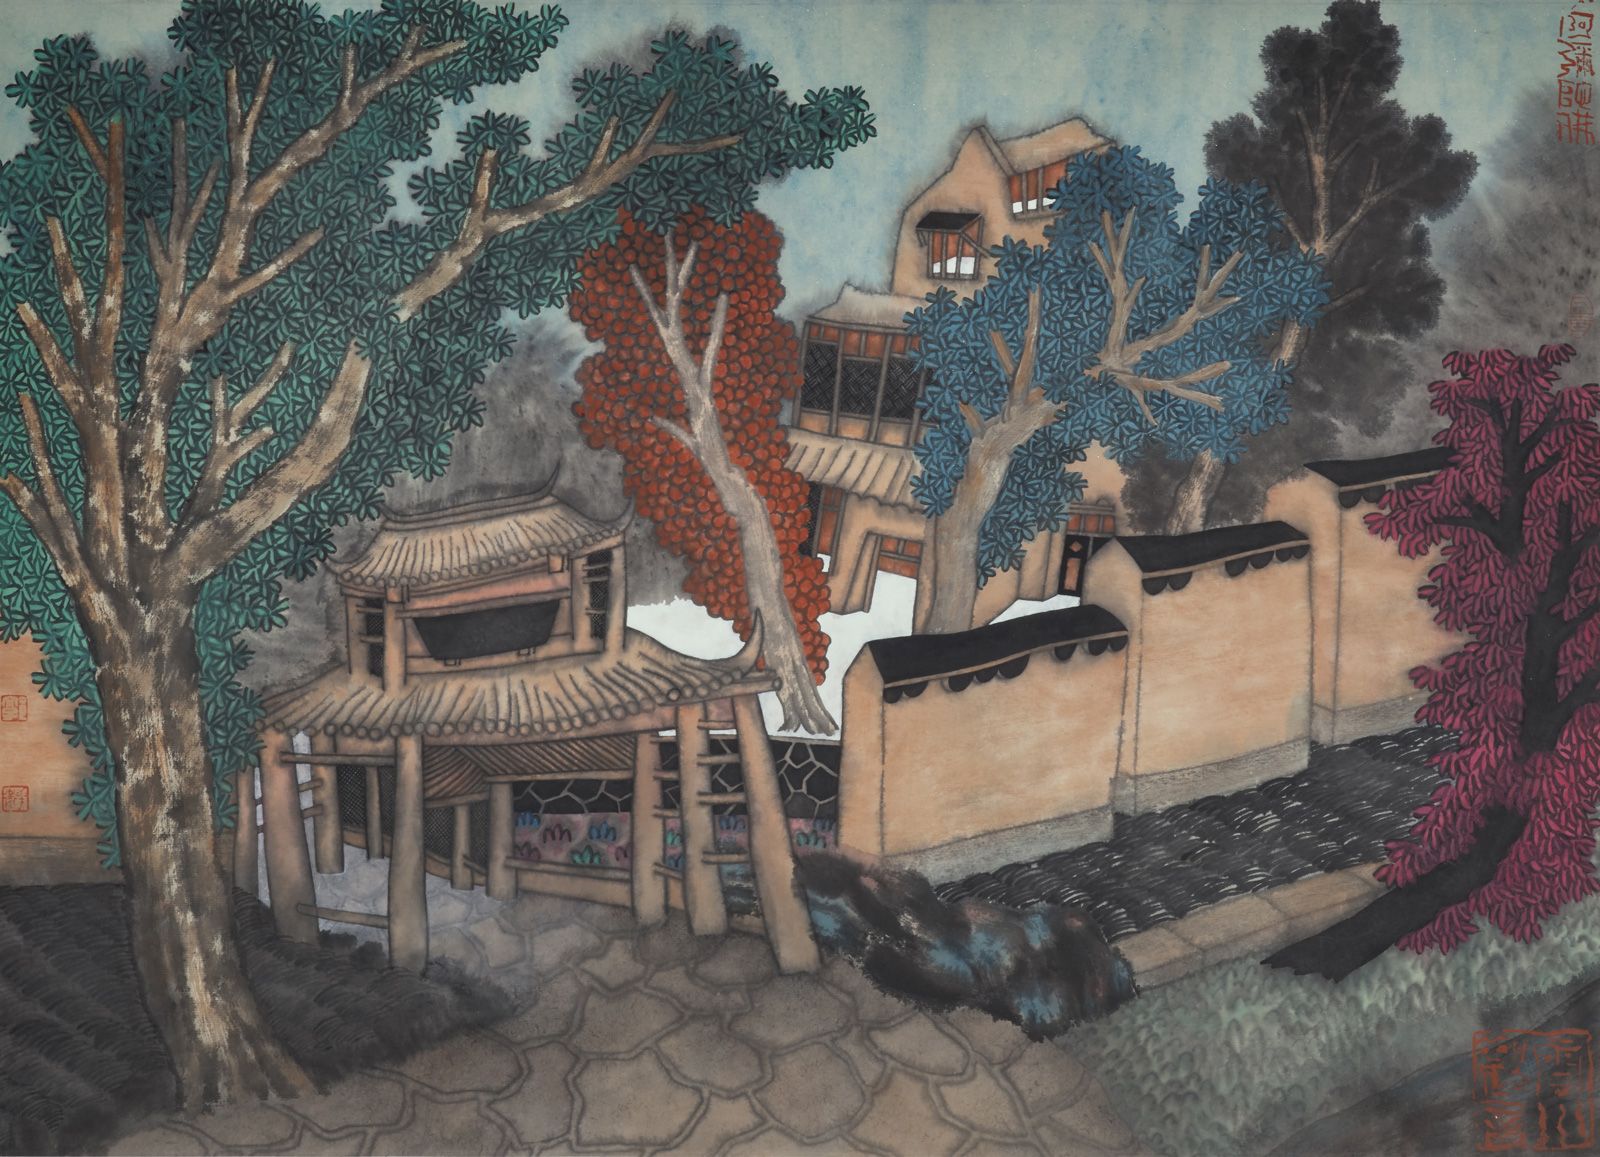 GUO Huawei (1983) 幸福之城的门廊，2012年
宣纸上的水墨与丙烯，右下角有艺术家的印章
53 x 73 cm